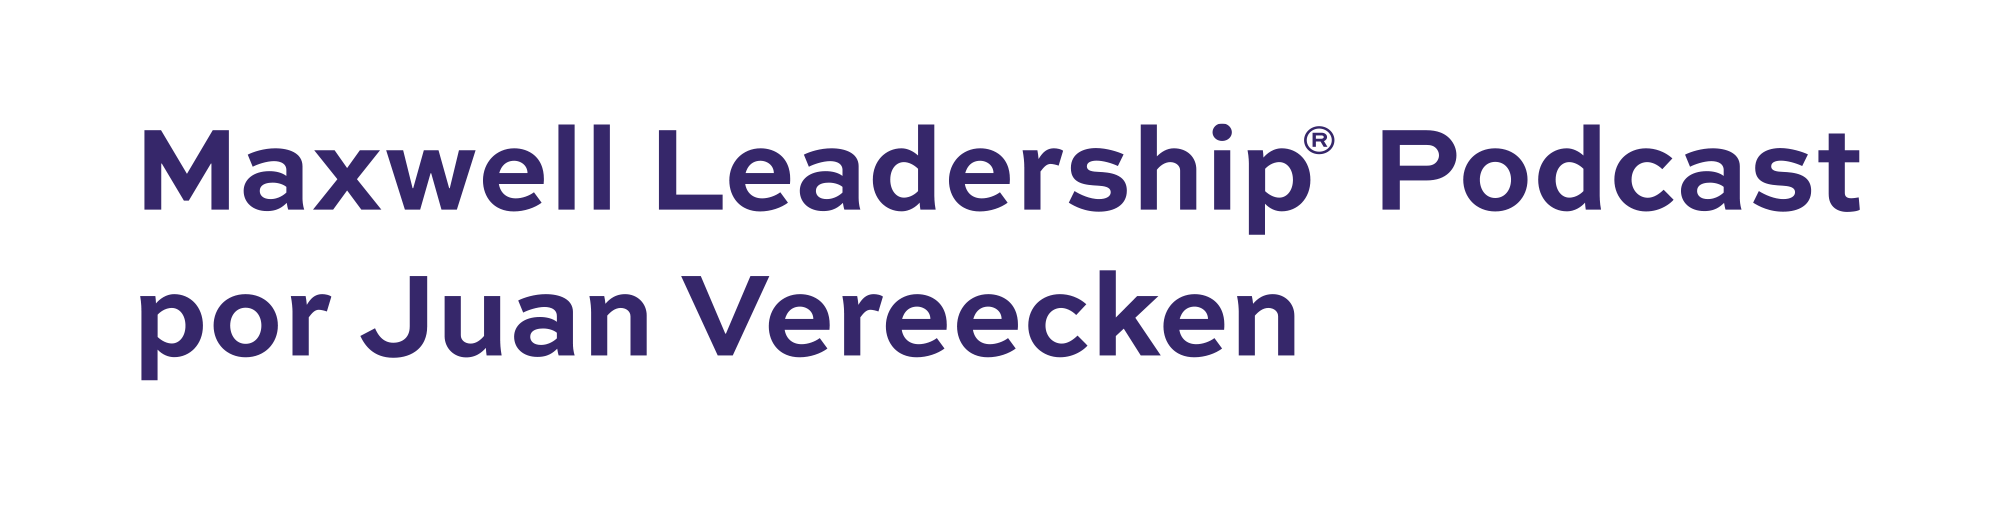 Maxwell Leadership Podcast por Juan Vereecken